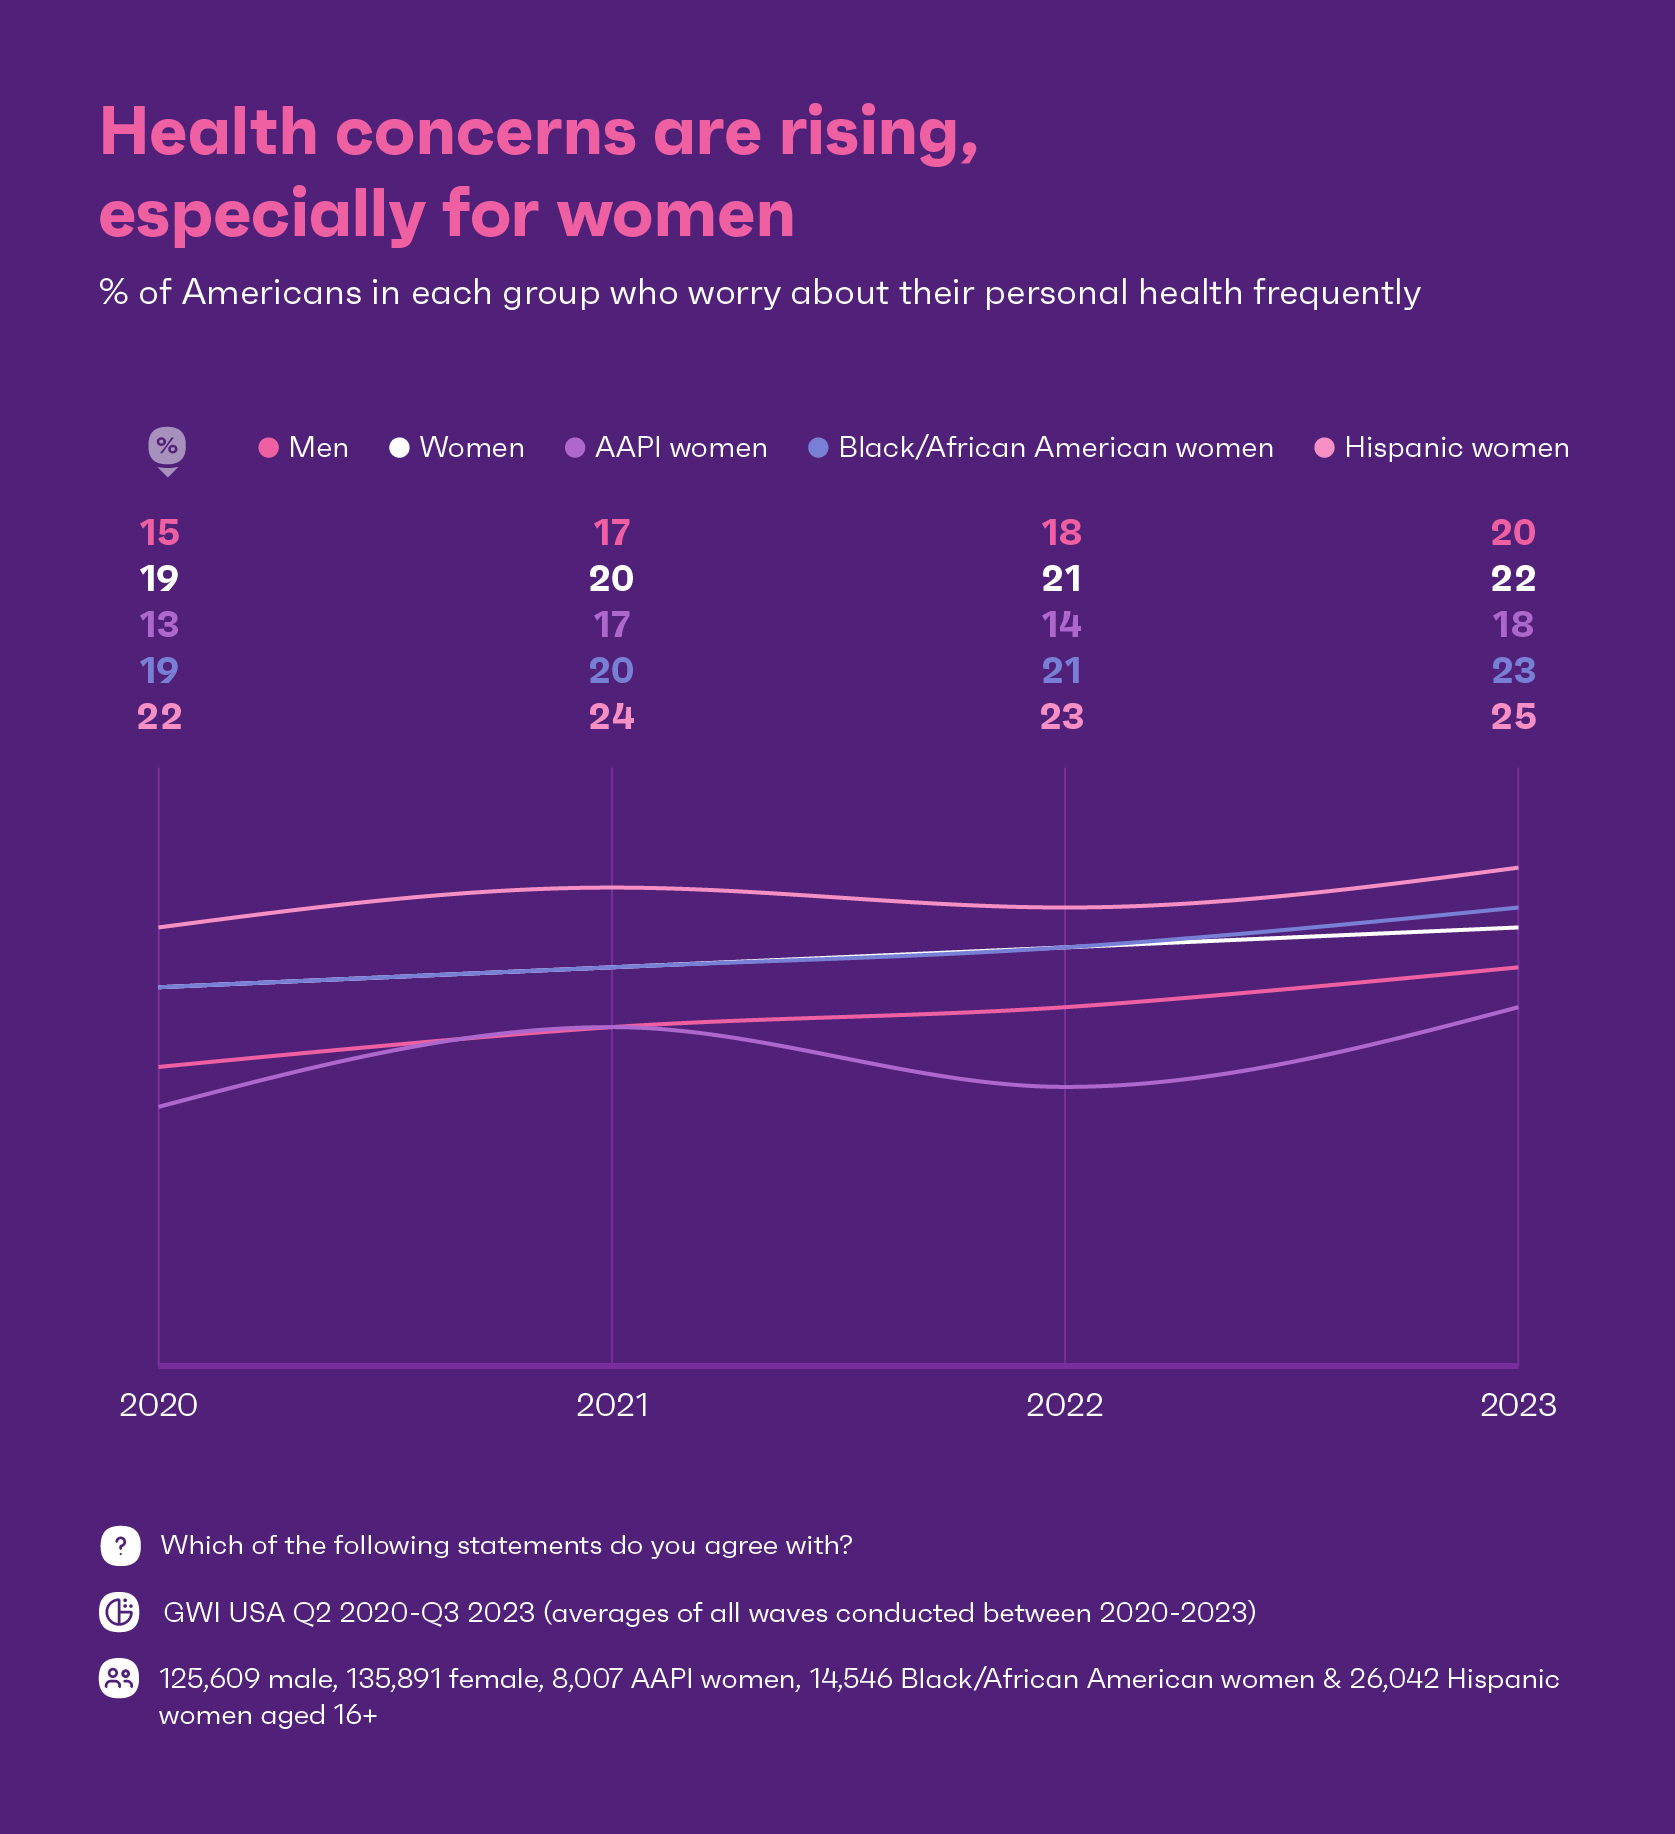 미국 내 어떤 그룹이 자신의 건강에 대해 걱정하는지 보여주는 차트